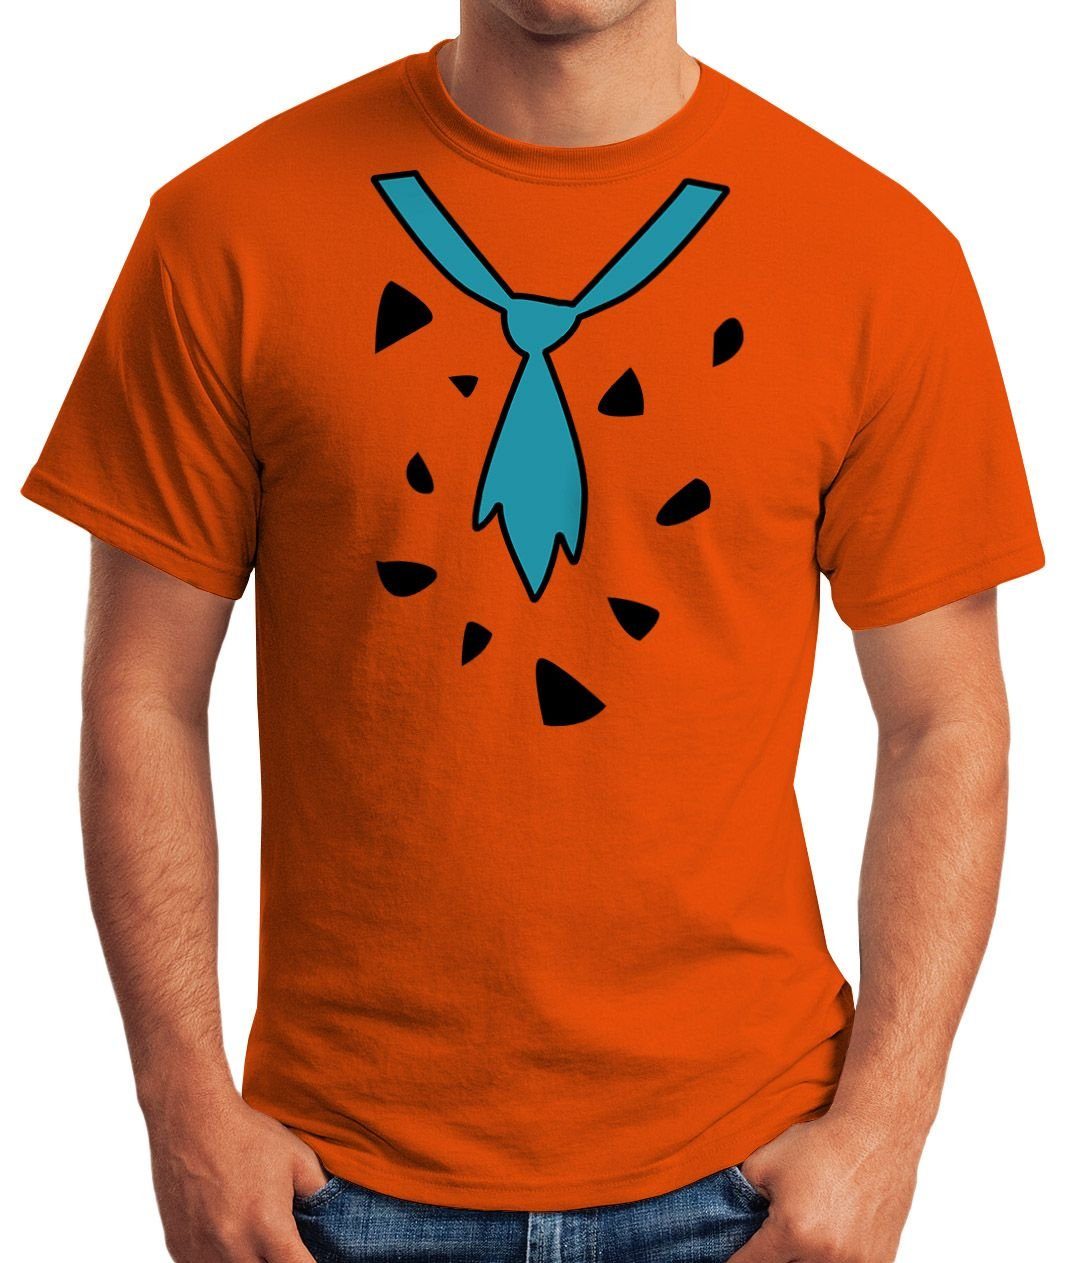 Moonworks® T-Shirt Faschings-Shirt Herren mit Fasching Feuerstein Fred MoonWorks Print Karneval Print-Shirt